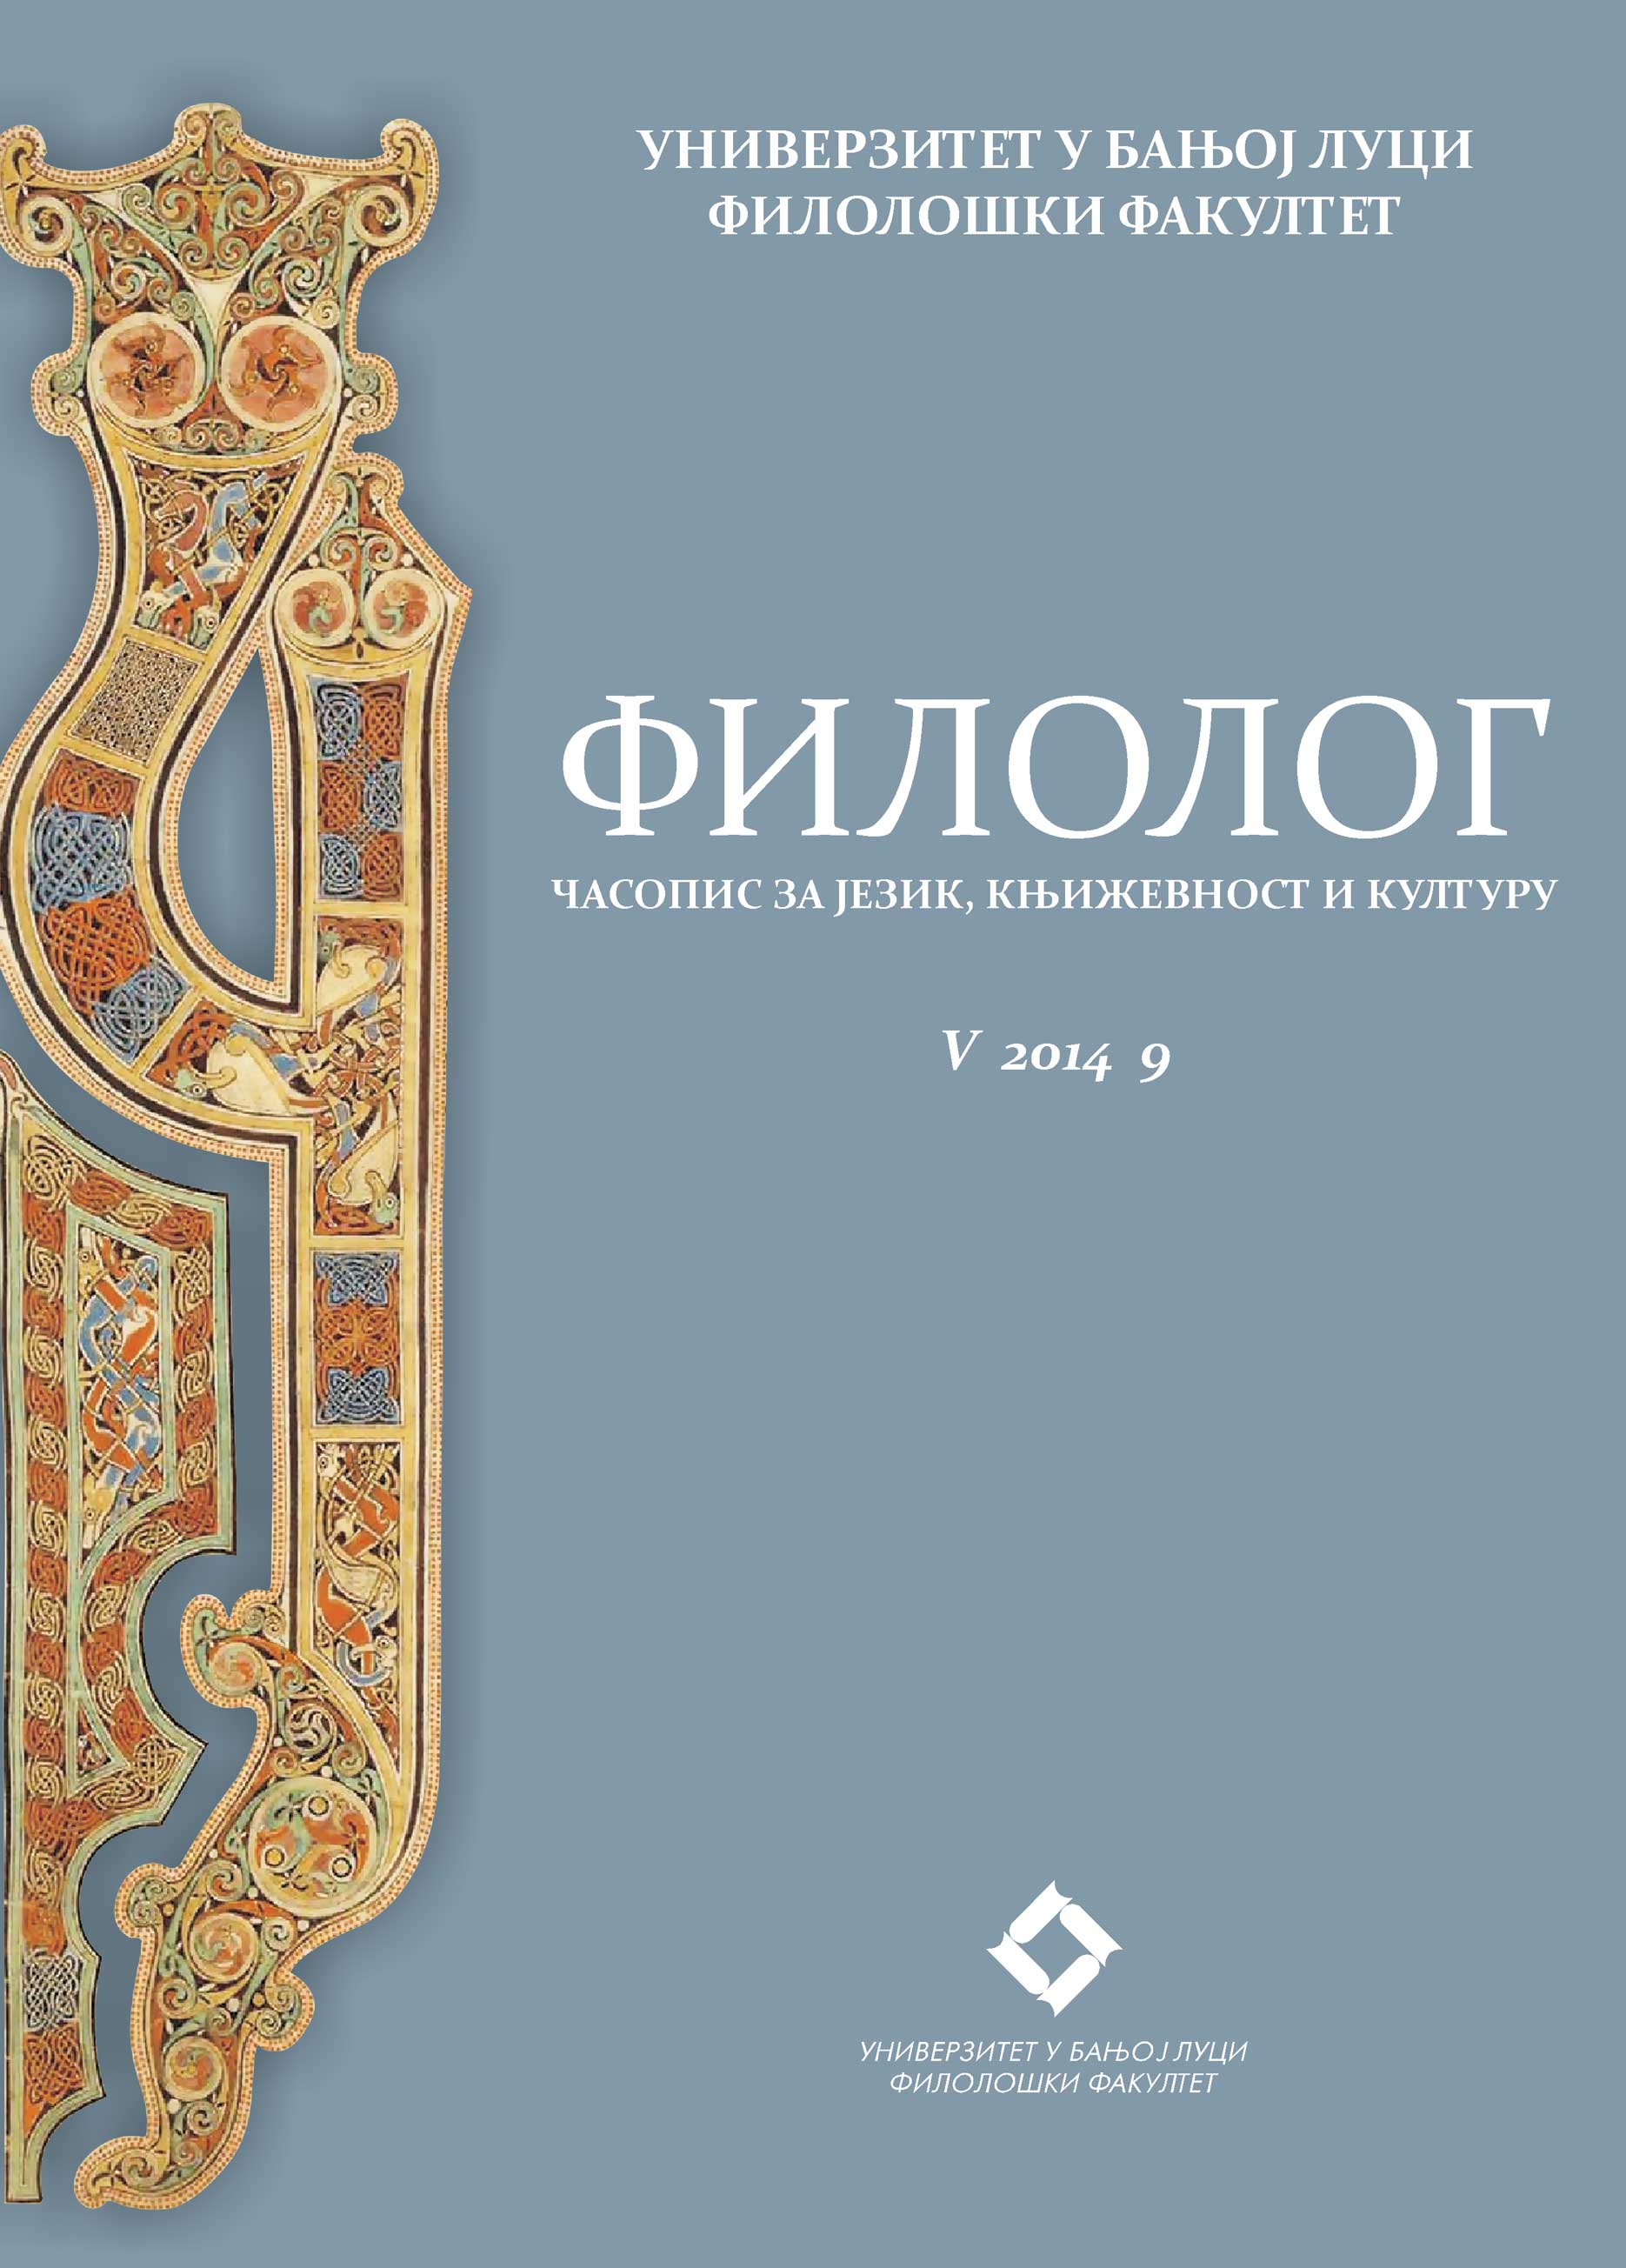 Nenad Veličković’s “Sahib”: Novel Writing Against Balkanism Cover Image